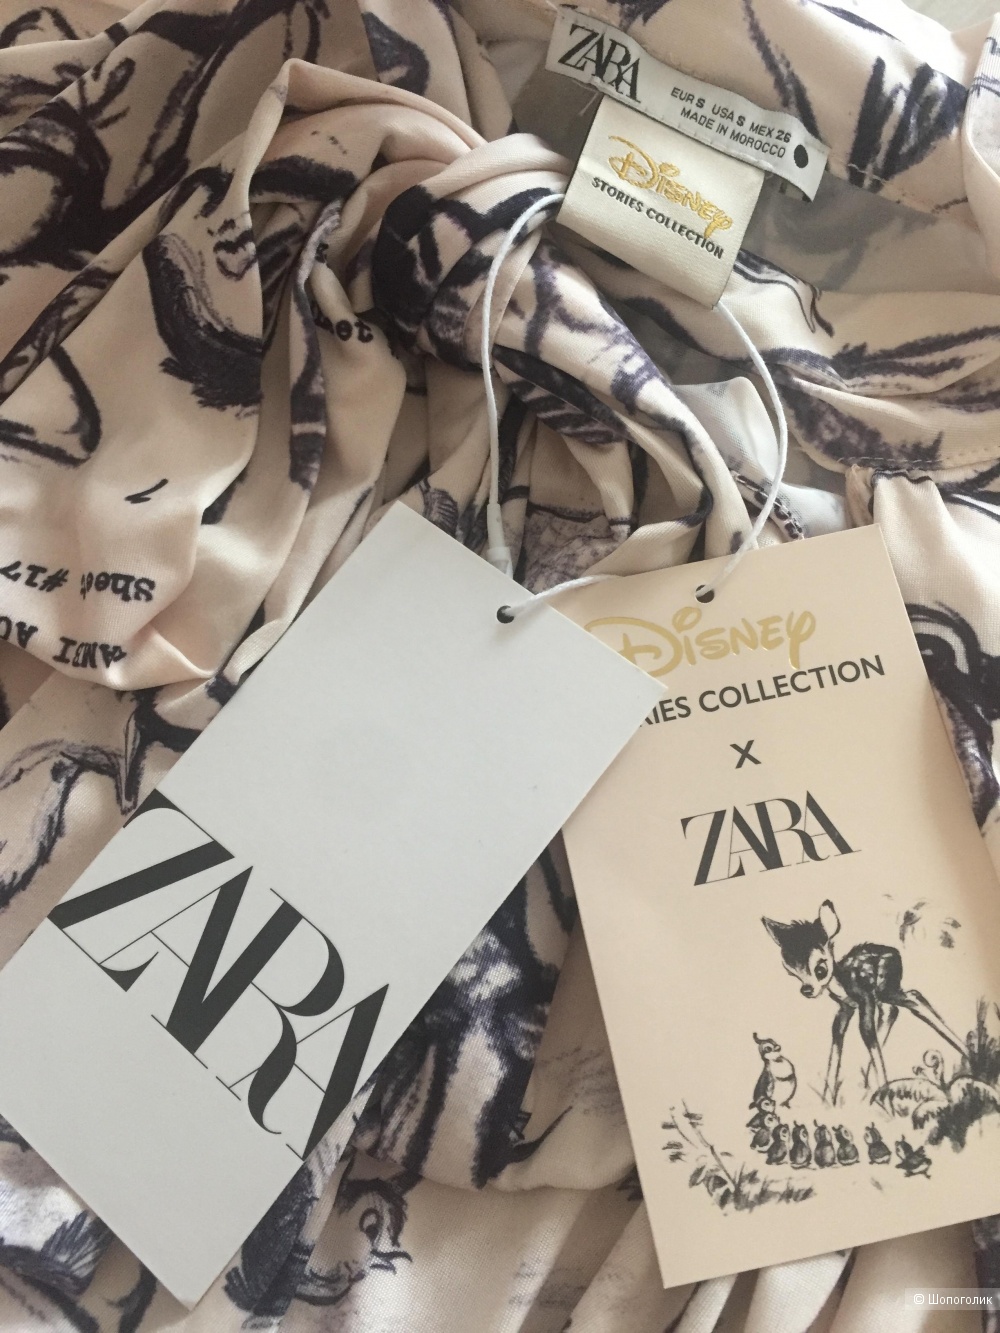 Zara блуза из лимитированной коллекции, размер s